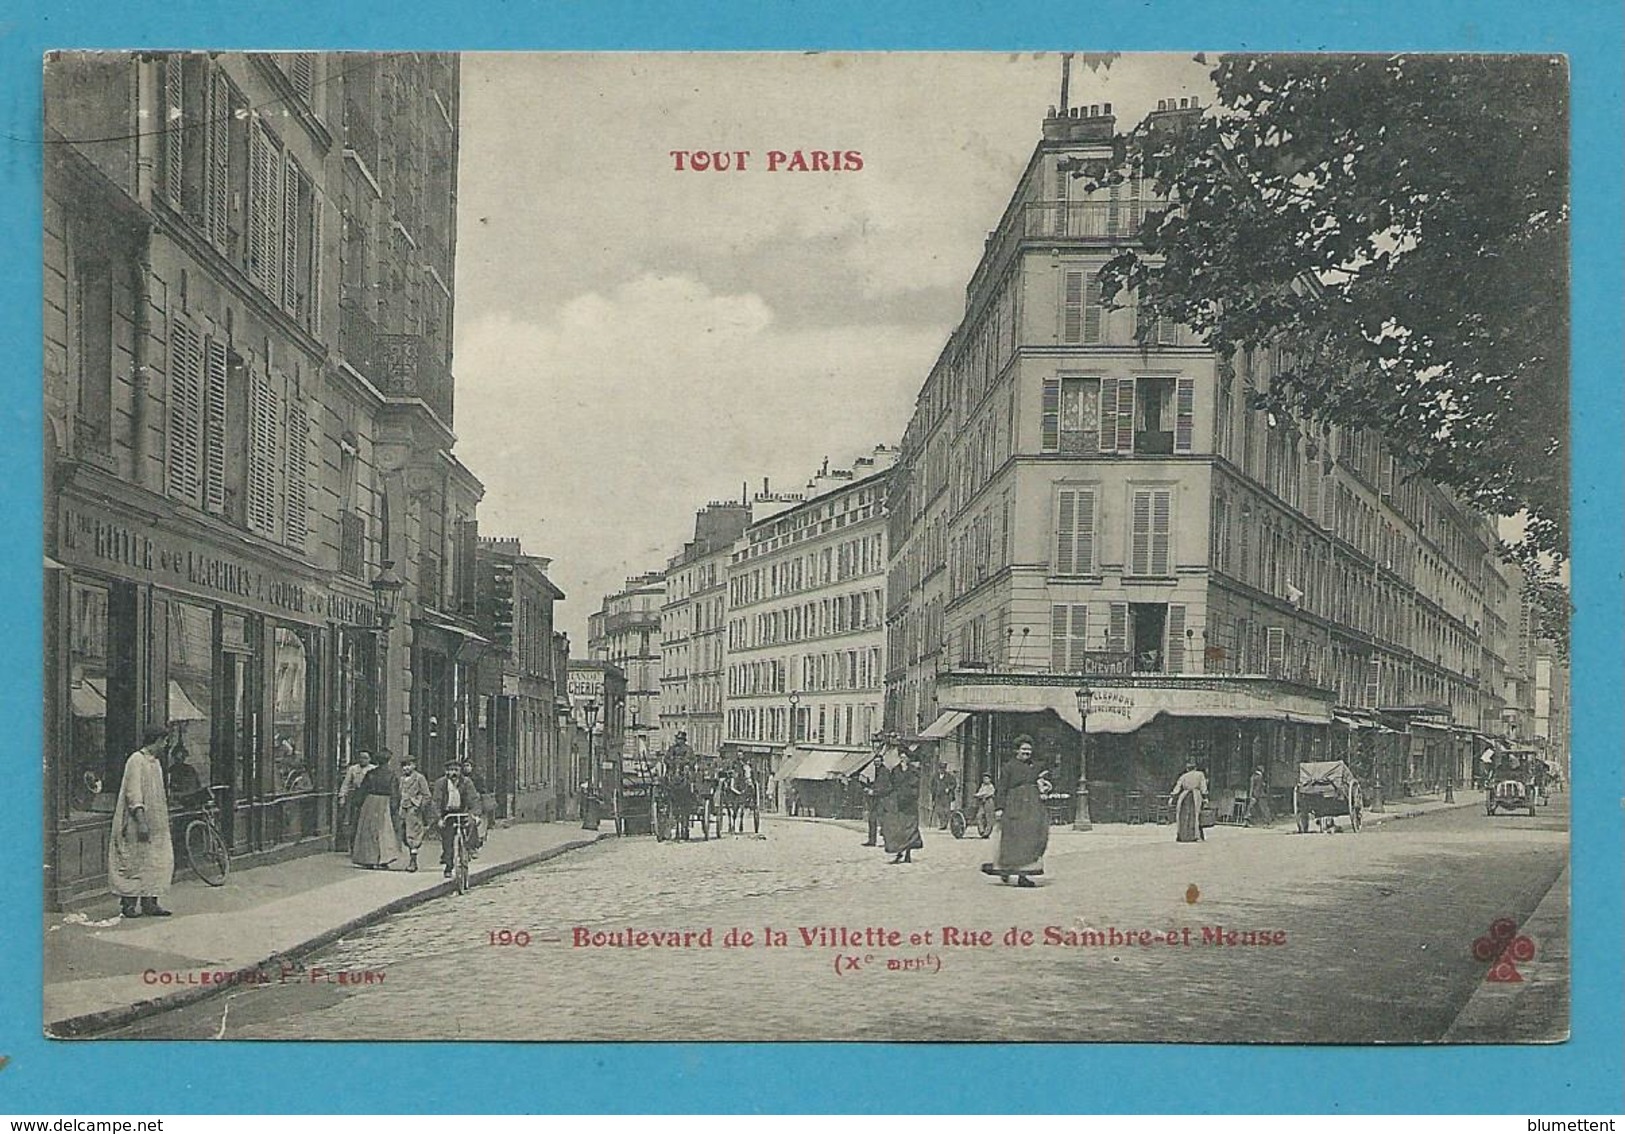 CPA TOUT PARIS 190 - Boulevard De La Villette Et Rue De Sambre-et-Meuse (Xème Arrt) Ed. FLEURY - Distretto: 20